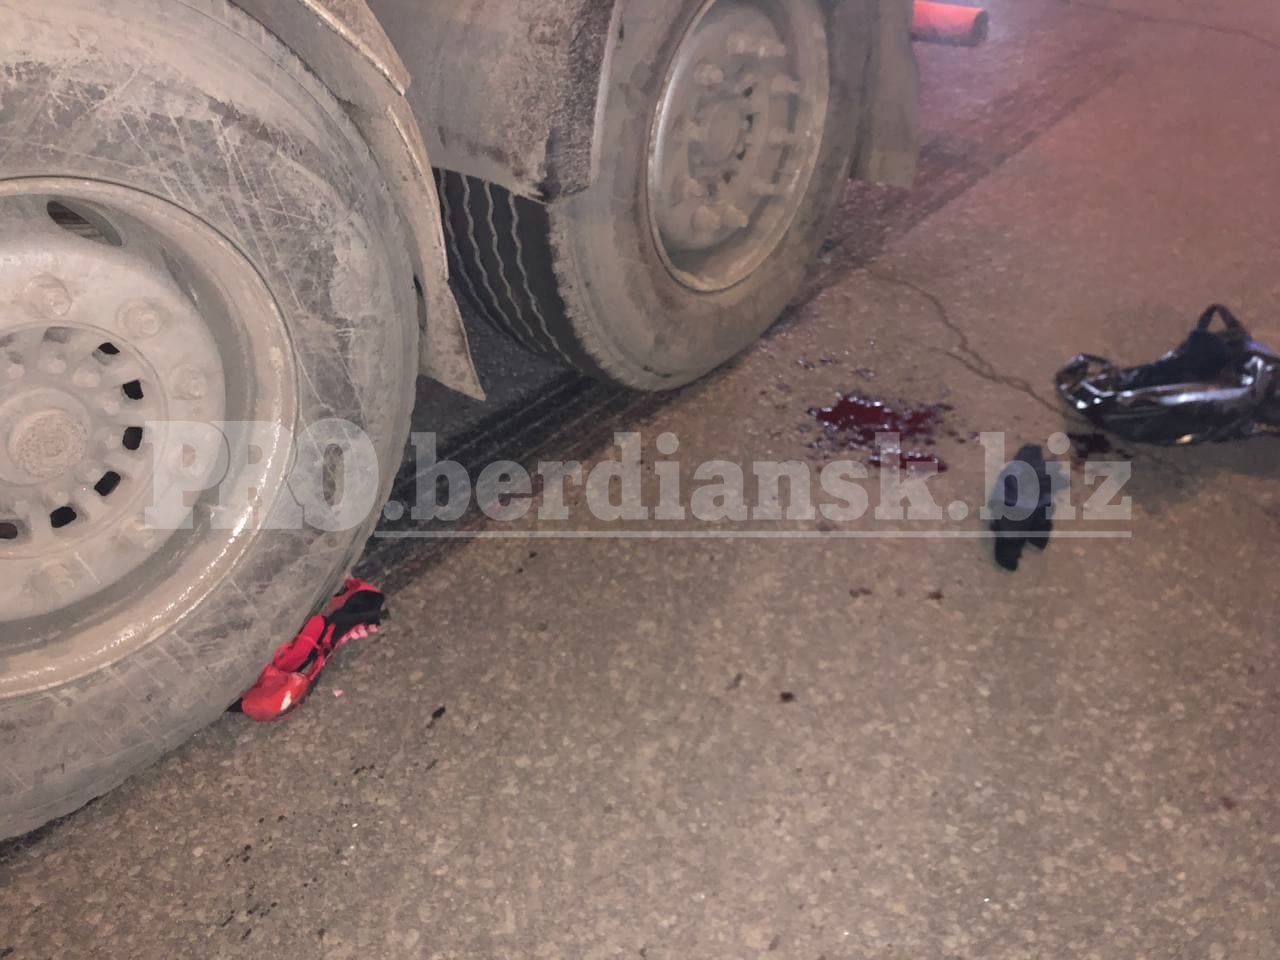 В Бердянске пьяный велосипедист попал под колеса фуры (ФОТО)